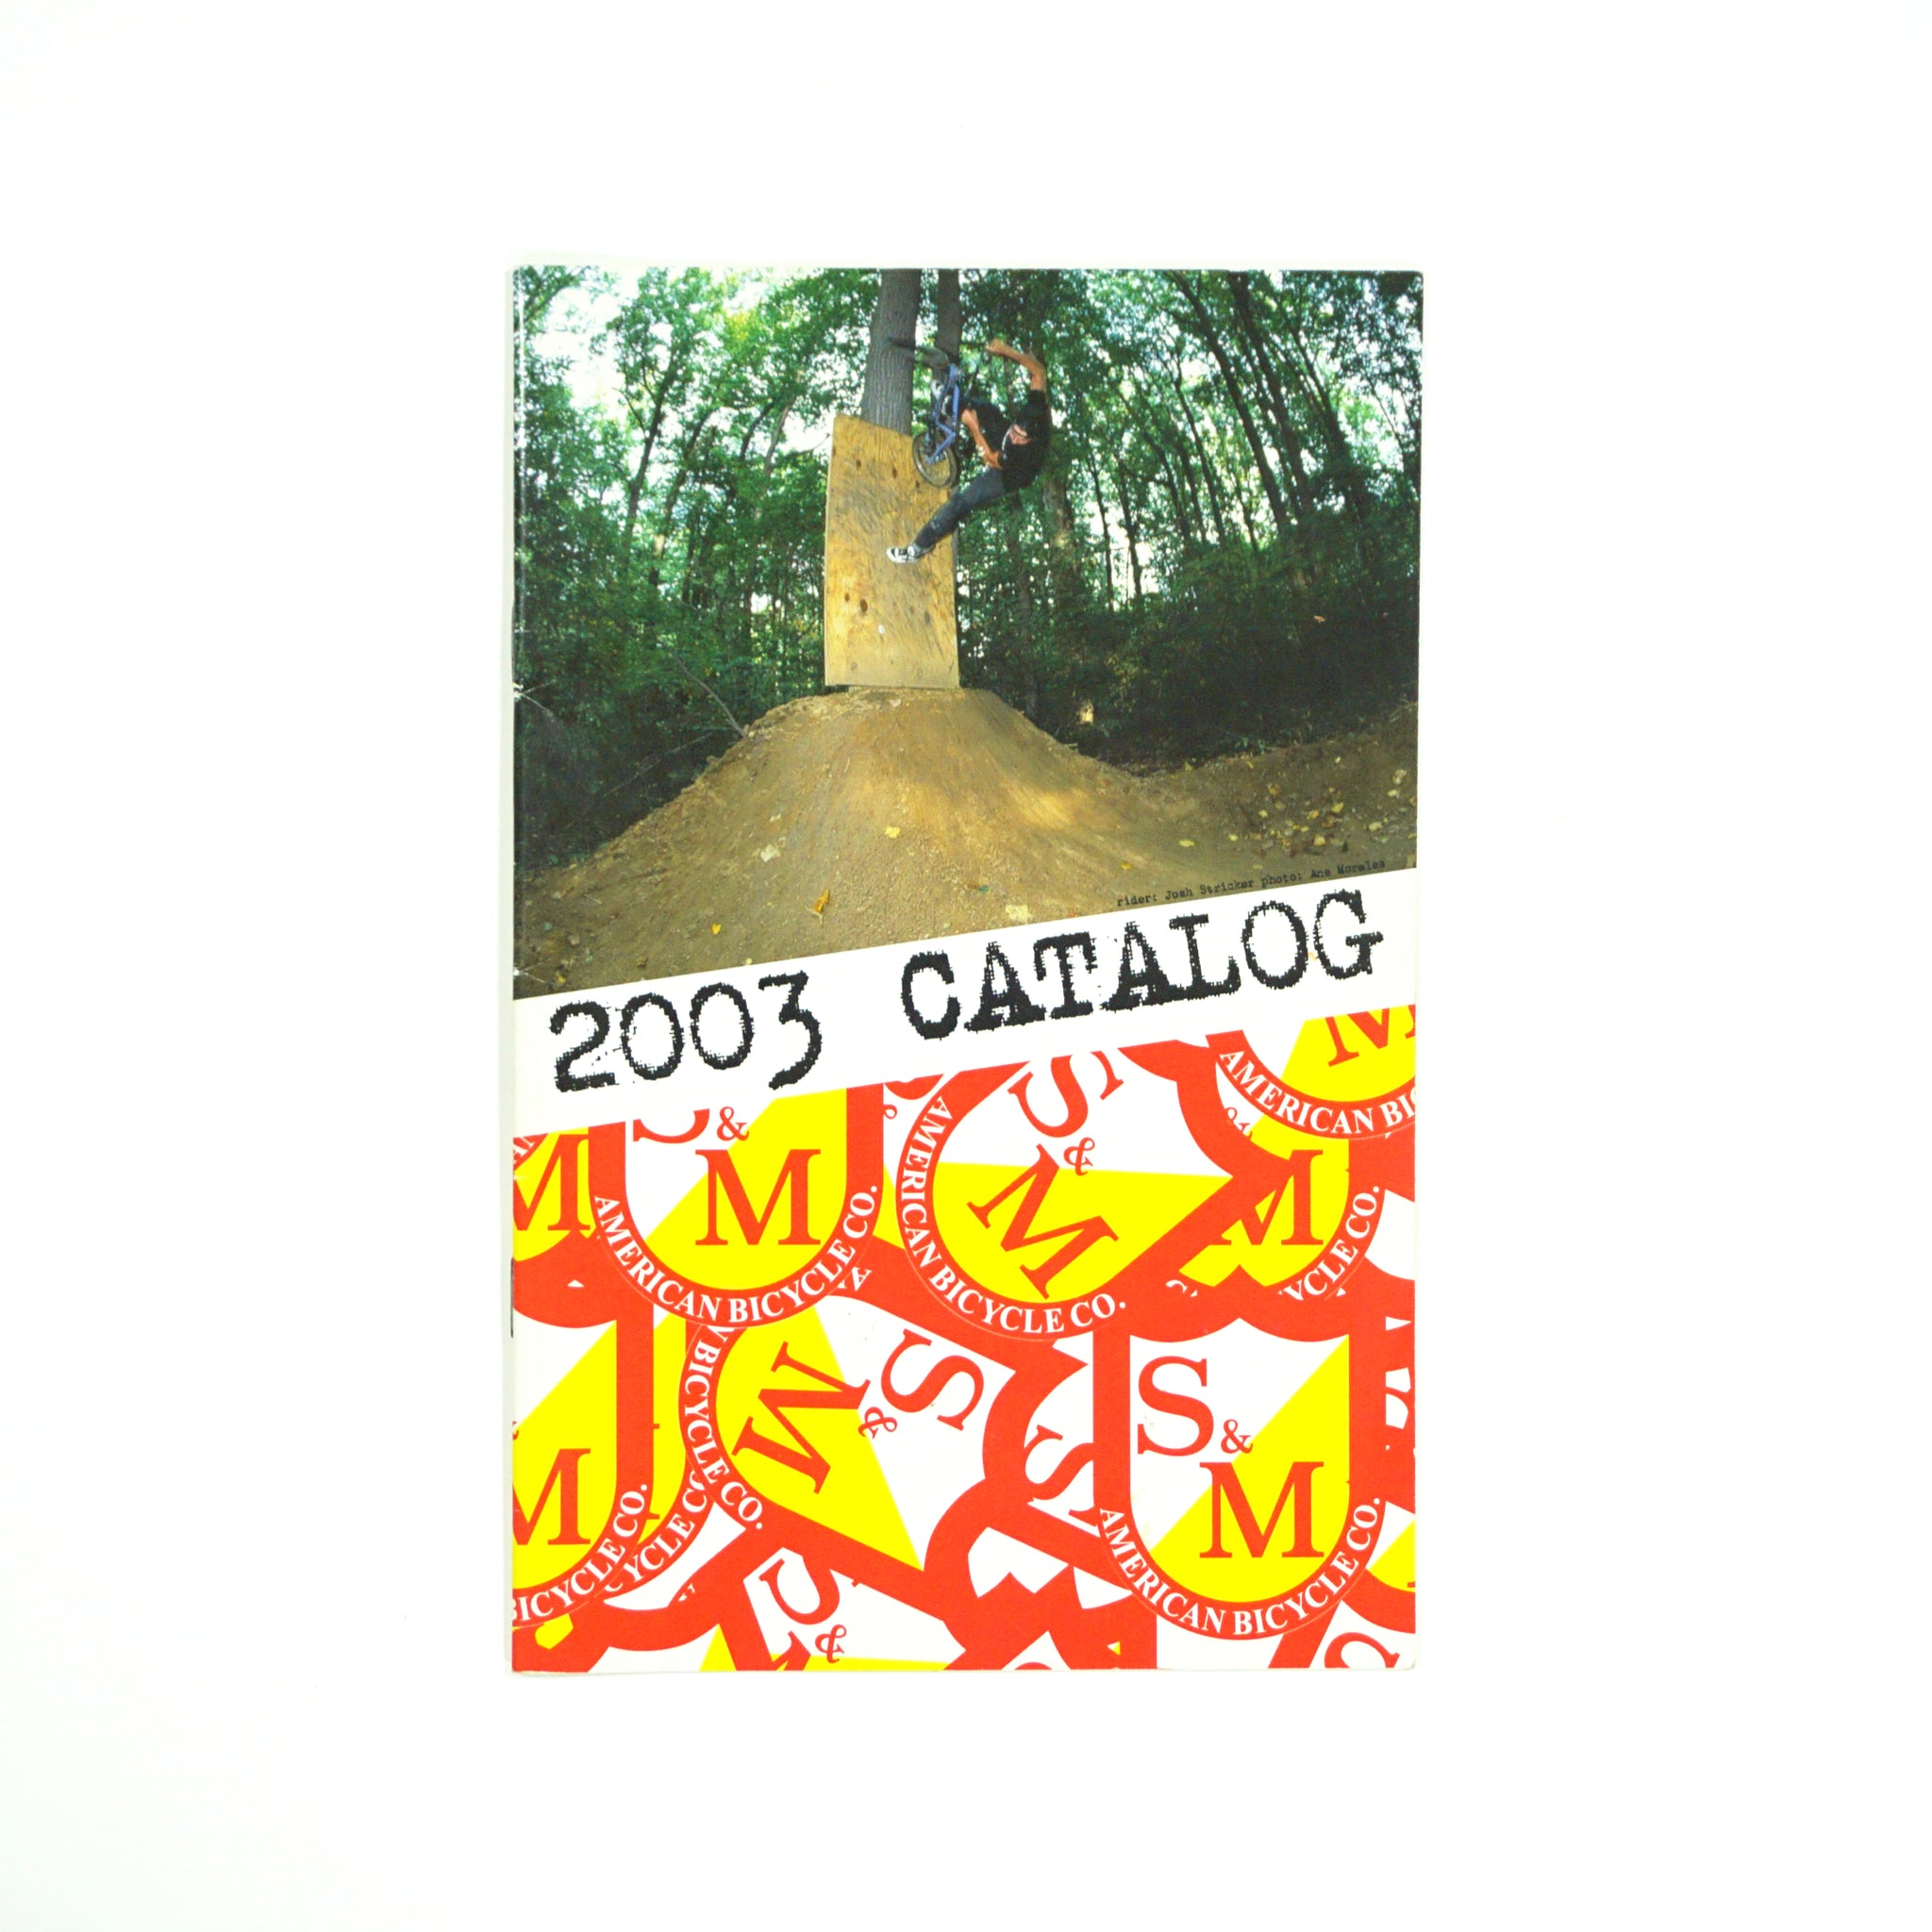 S&M Bikes - 2003 Catalog